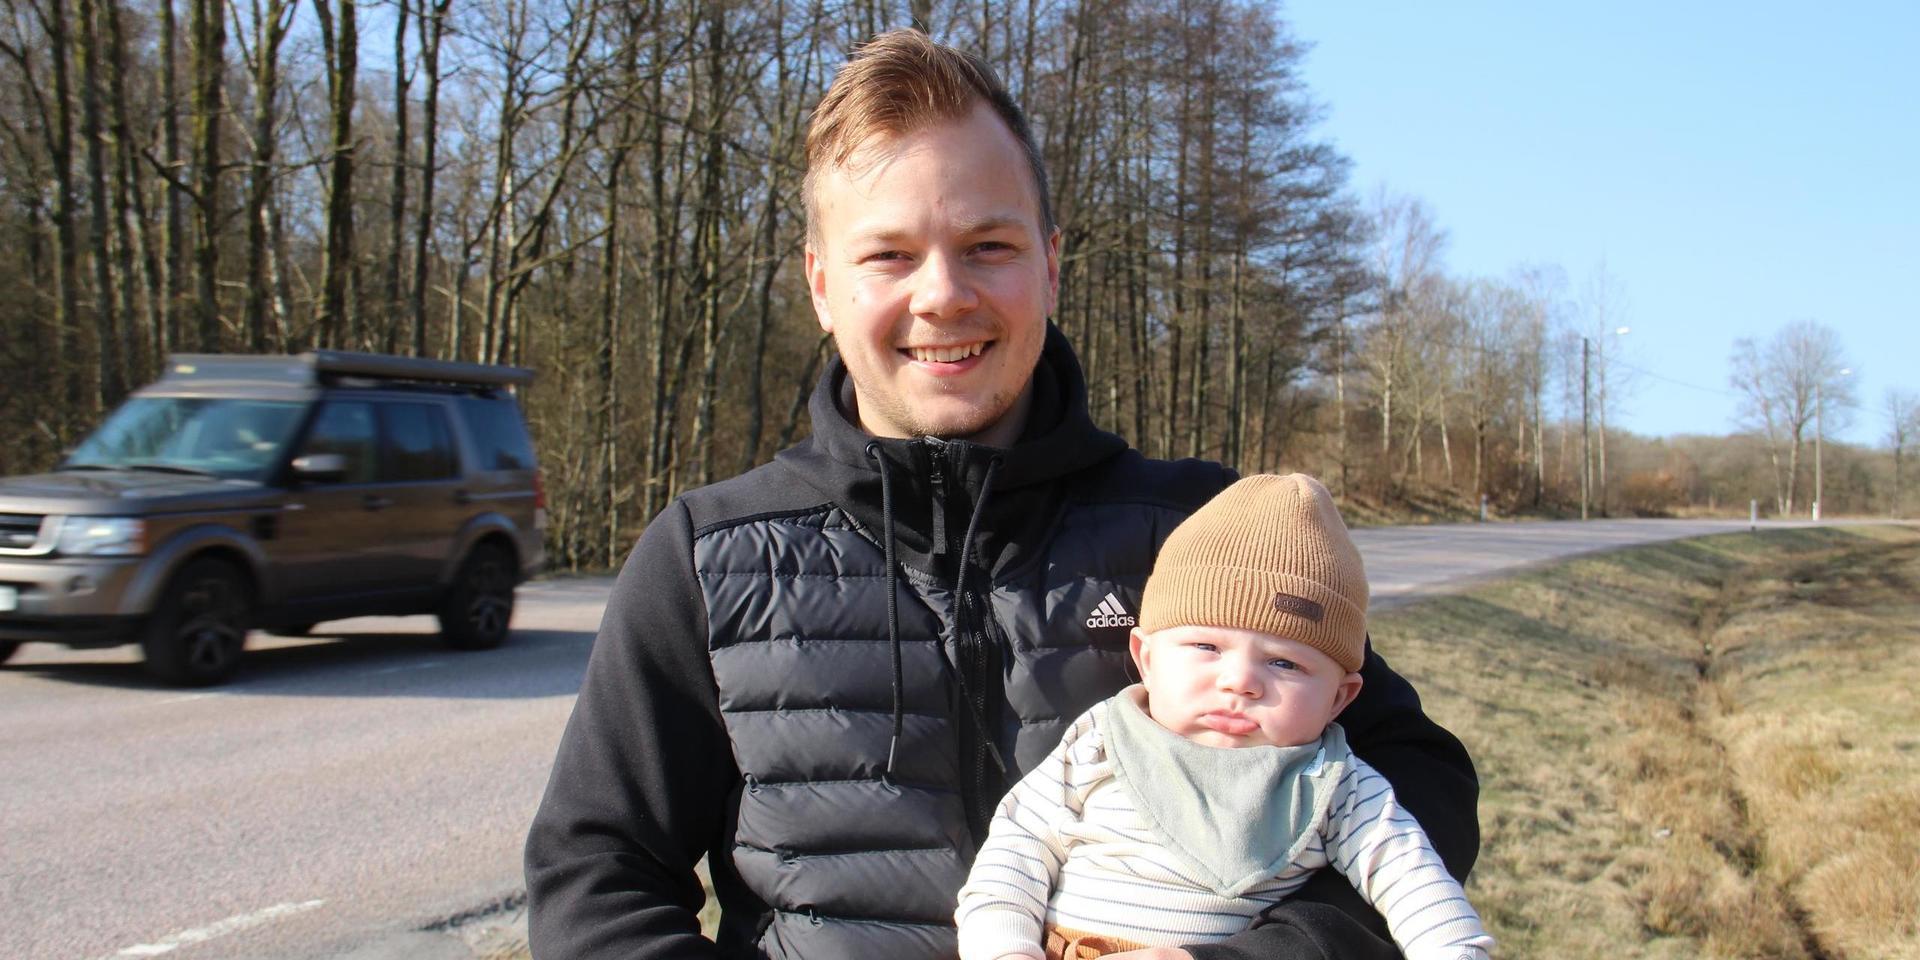 ”Att kunna ta sig fram på annat sätt än med bil är viktigt, säger Filip Rubensson om den planerade cykelbanan längs Spårhagavägen. Här med sonen Frans, fyra månader.